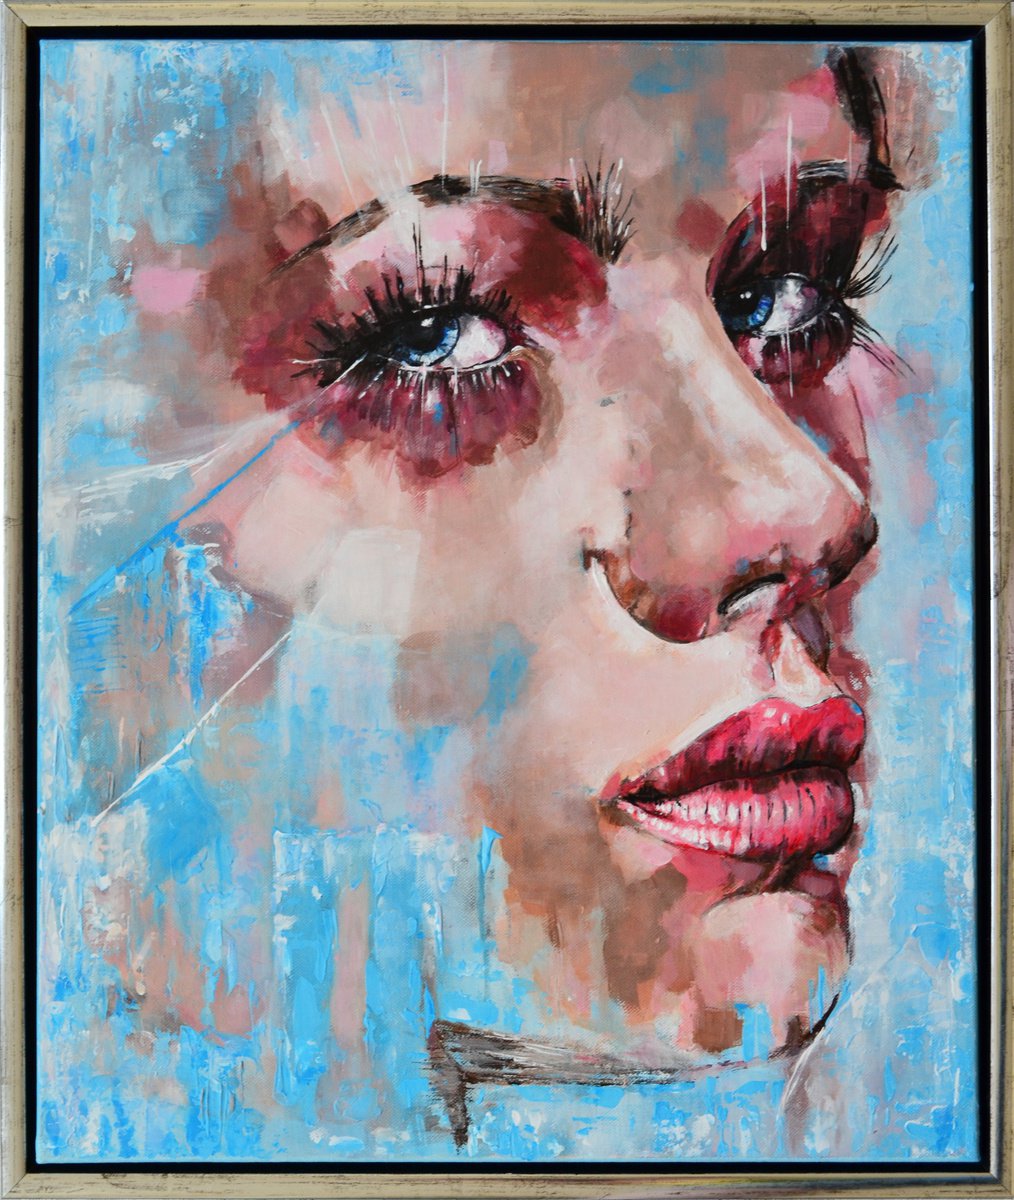 Anxiety - framed portrait by Misty Lady - M. Nierobisz